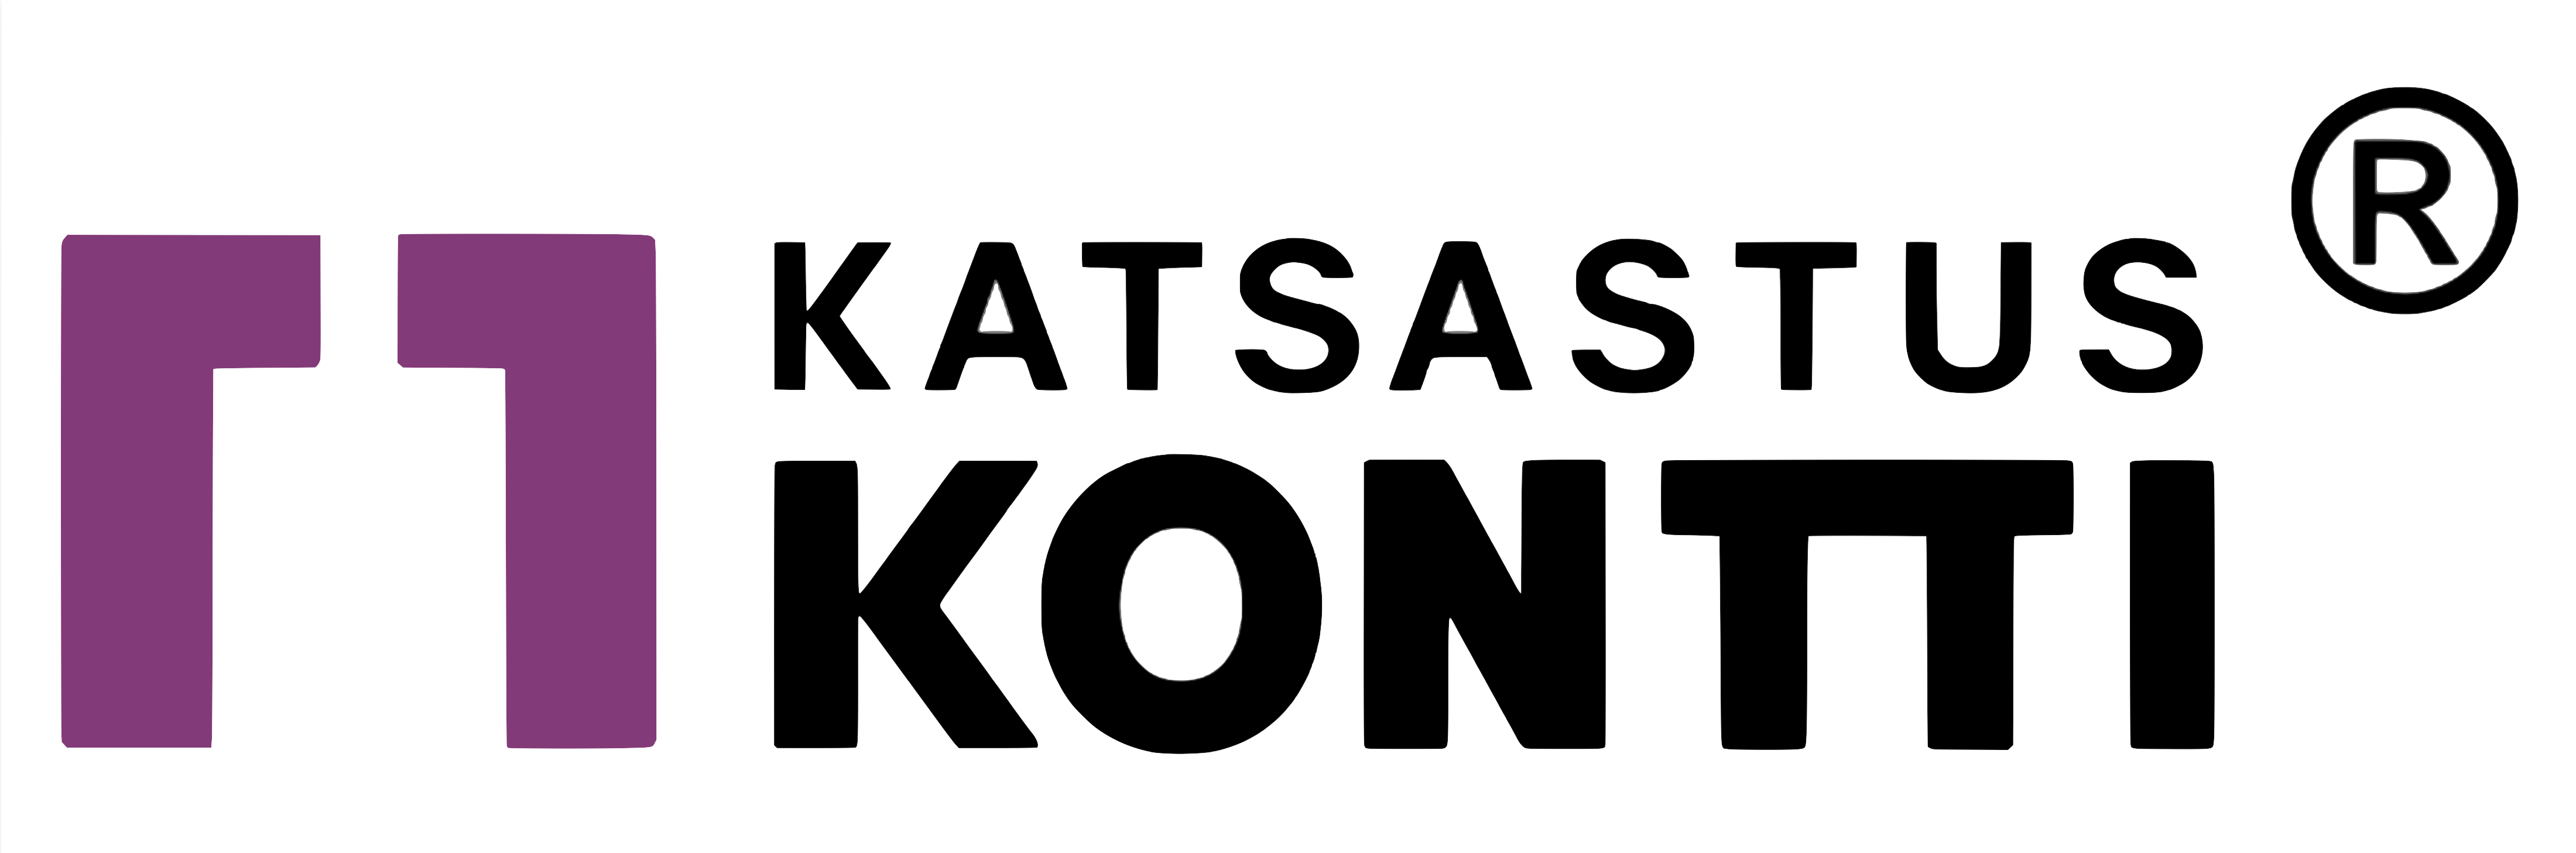 Katsastuskontti Kauppakeskus Matkus Kuopio -logo